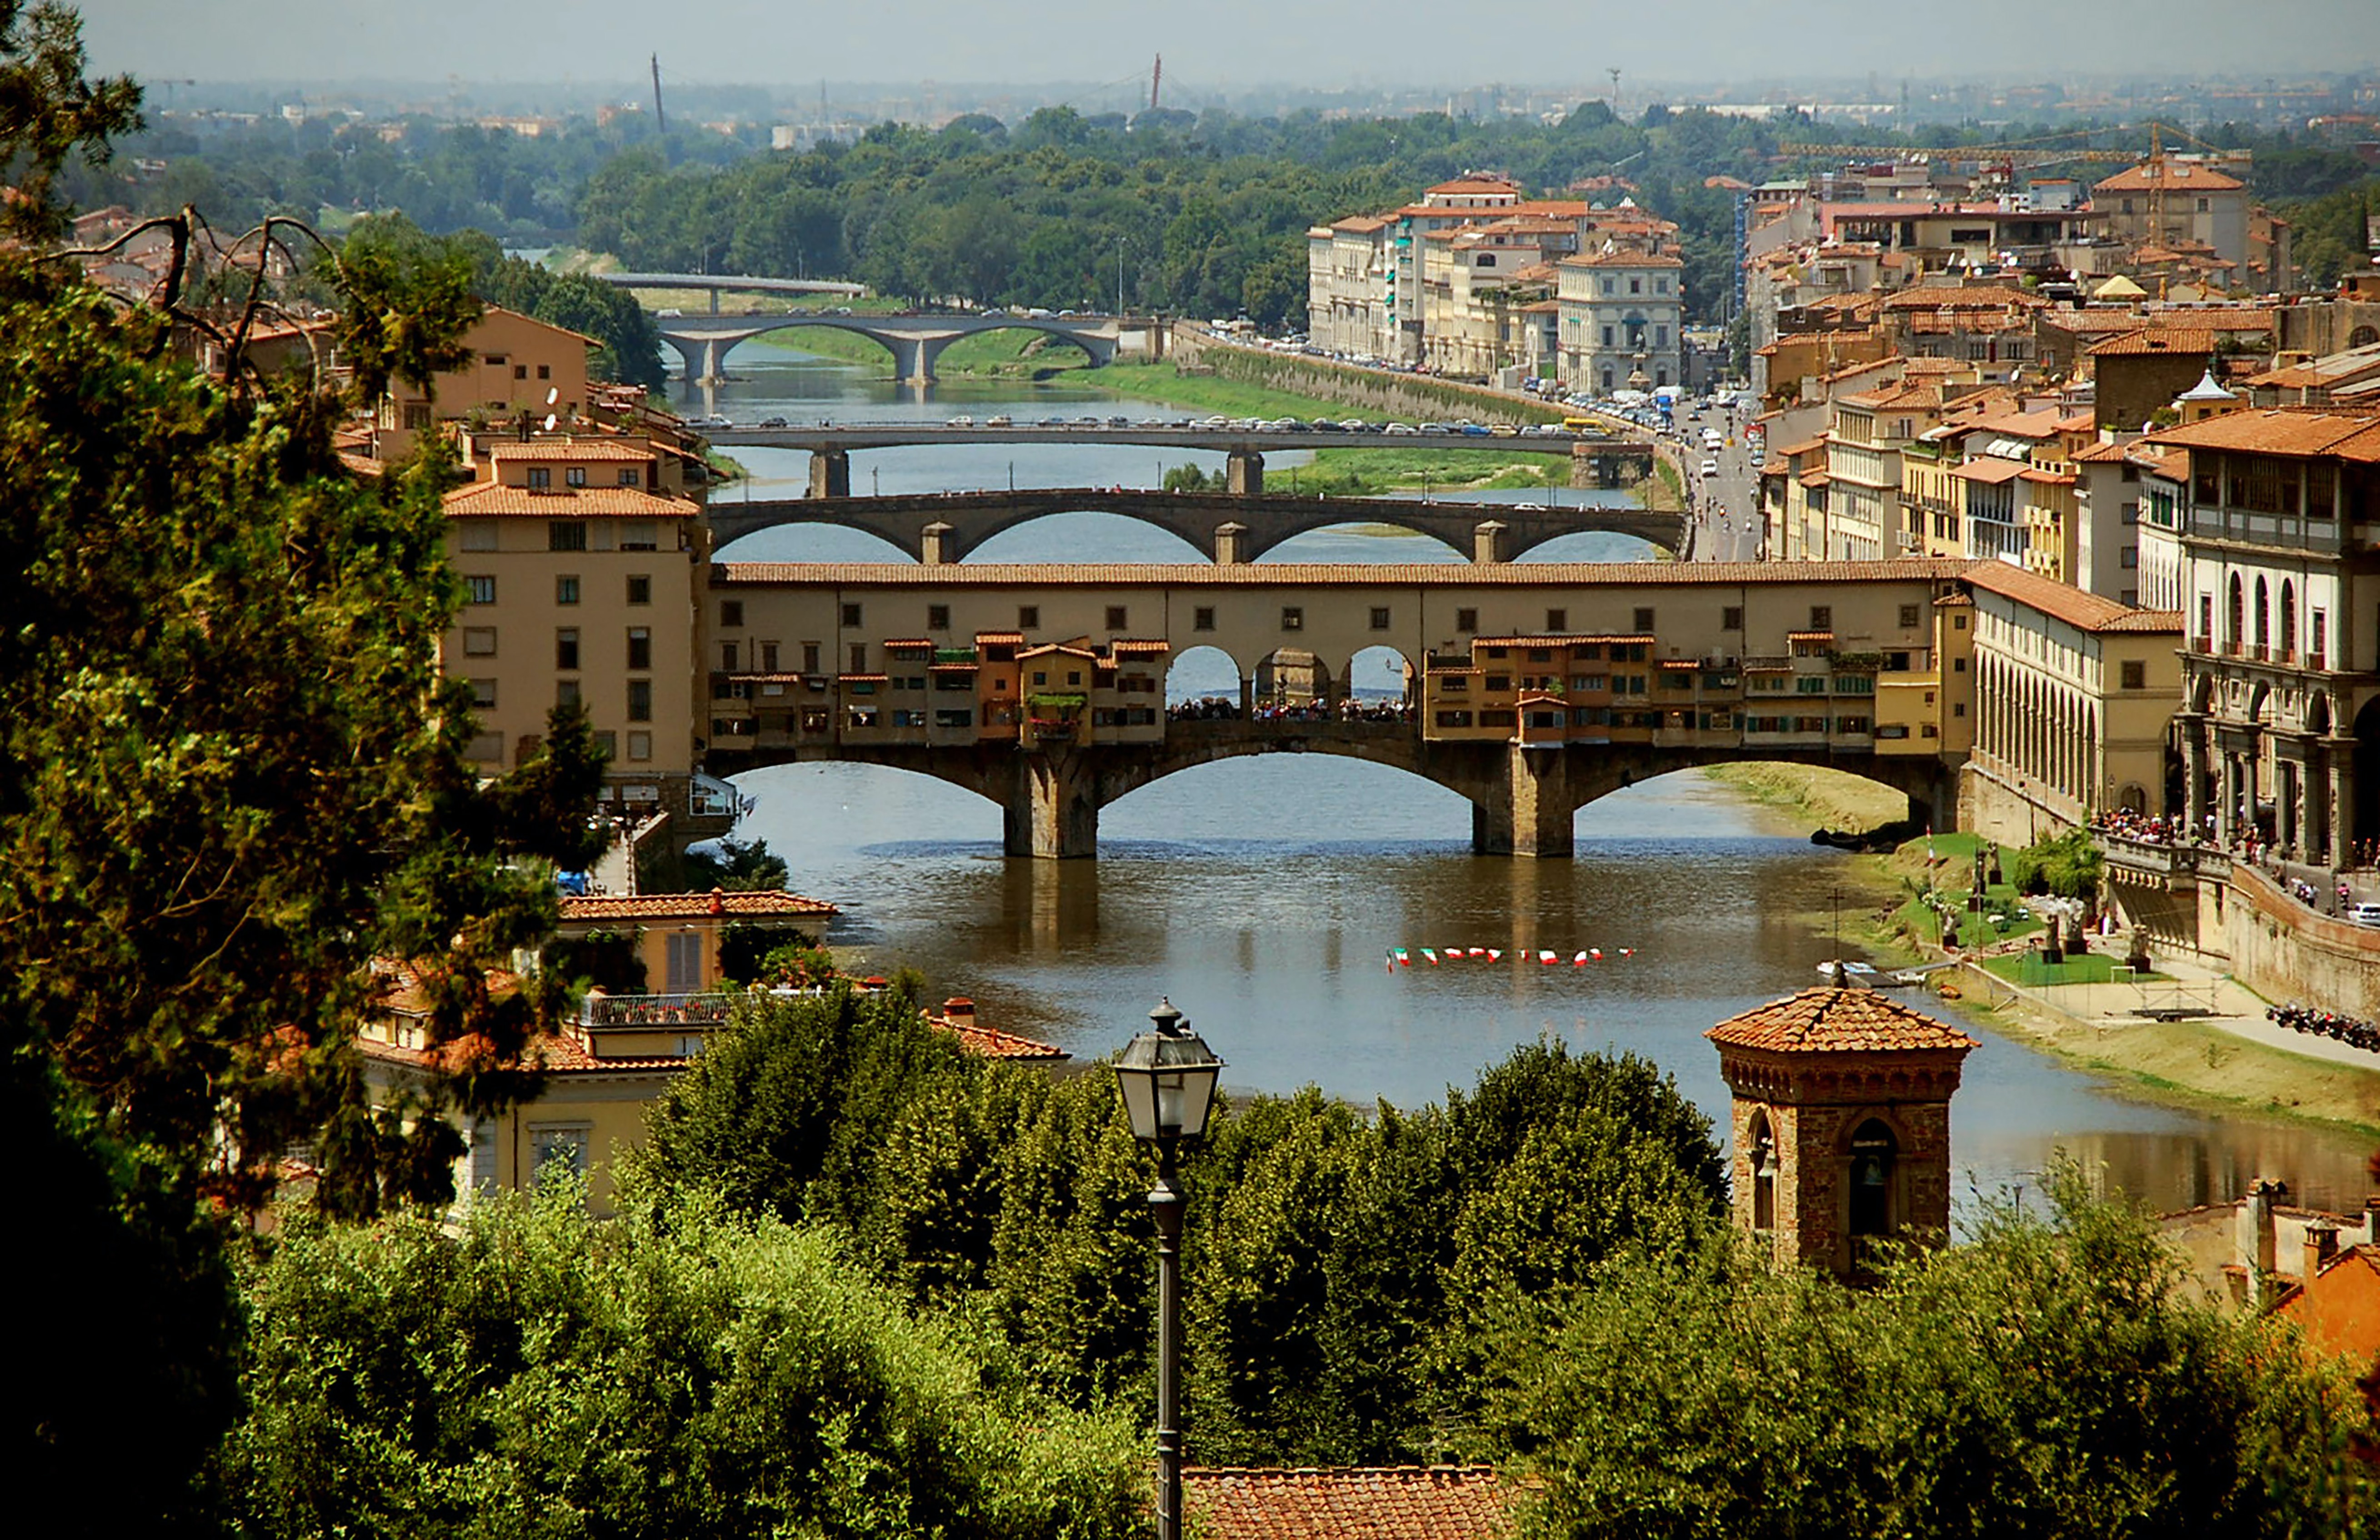 Affitti a Firenze: guida ai prezzi medi